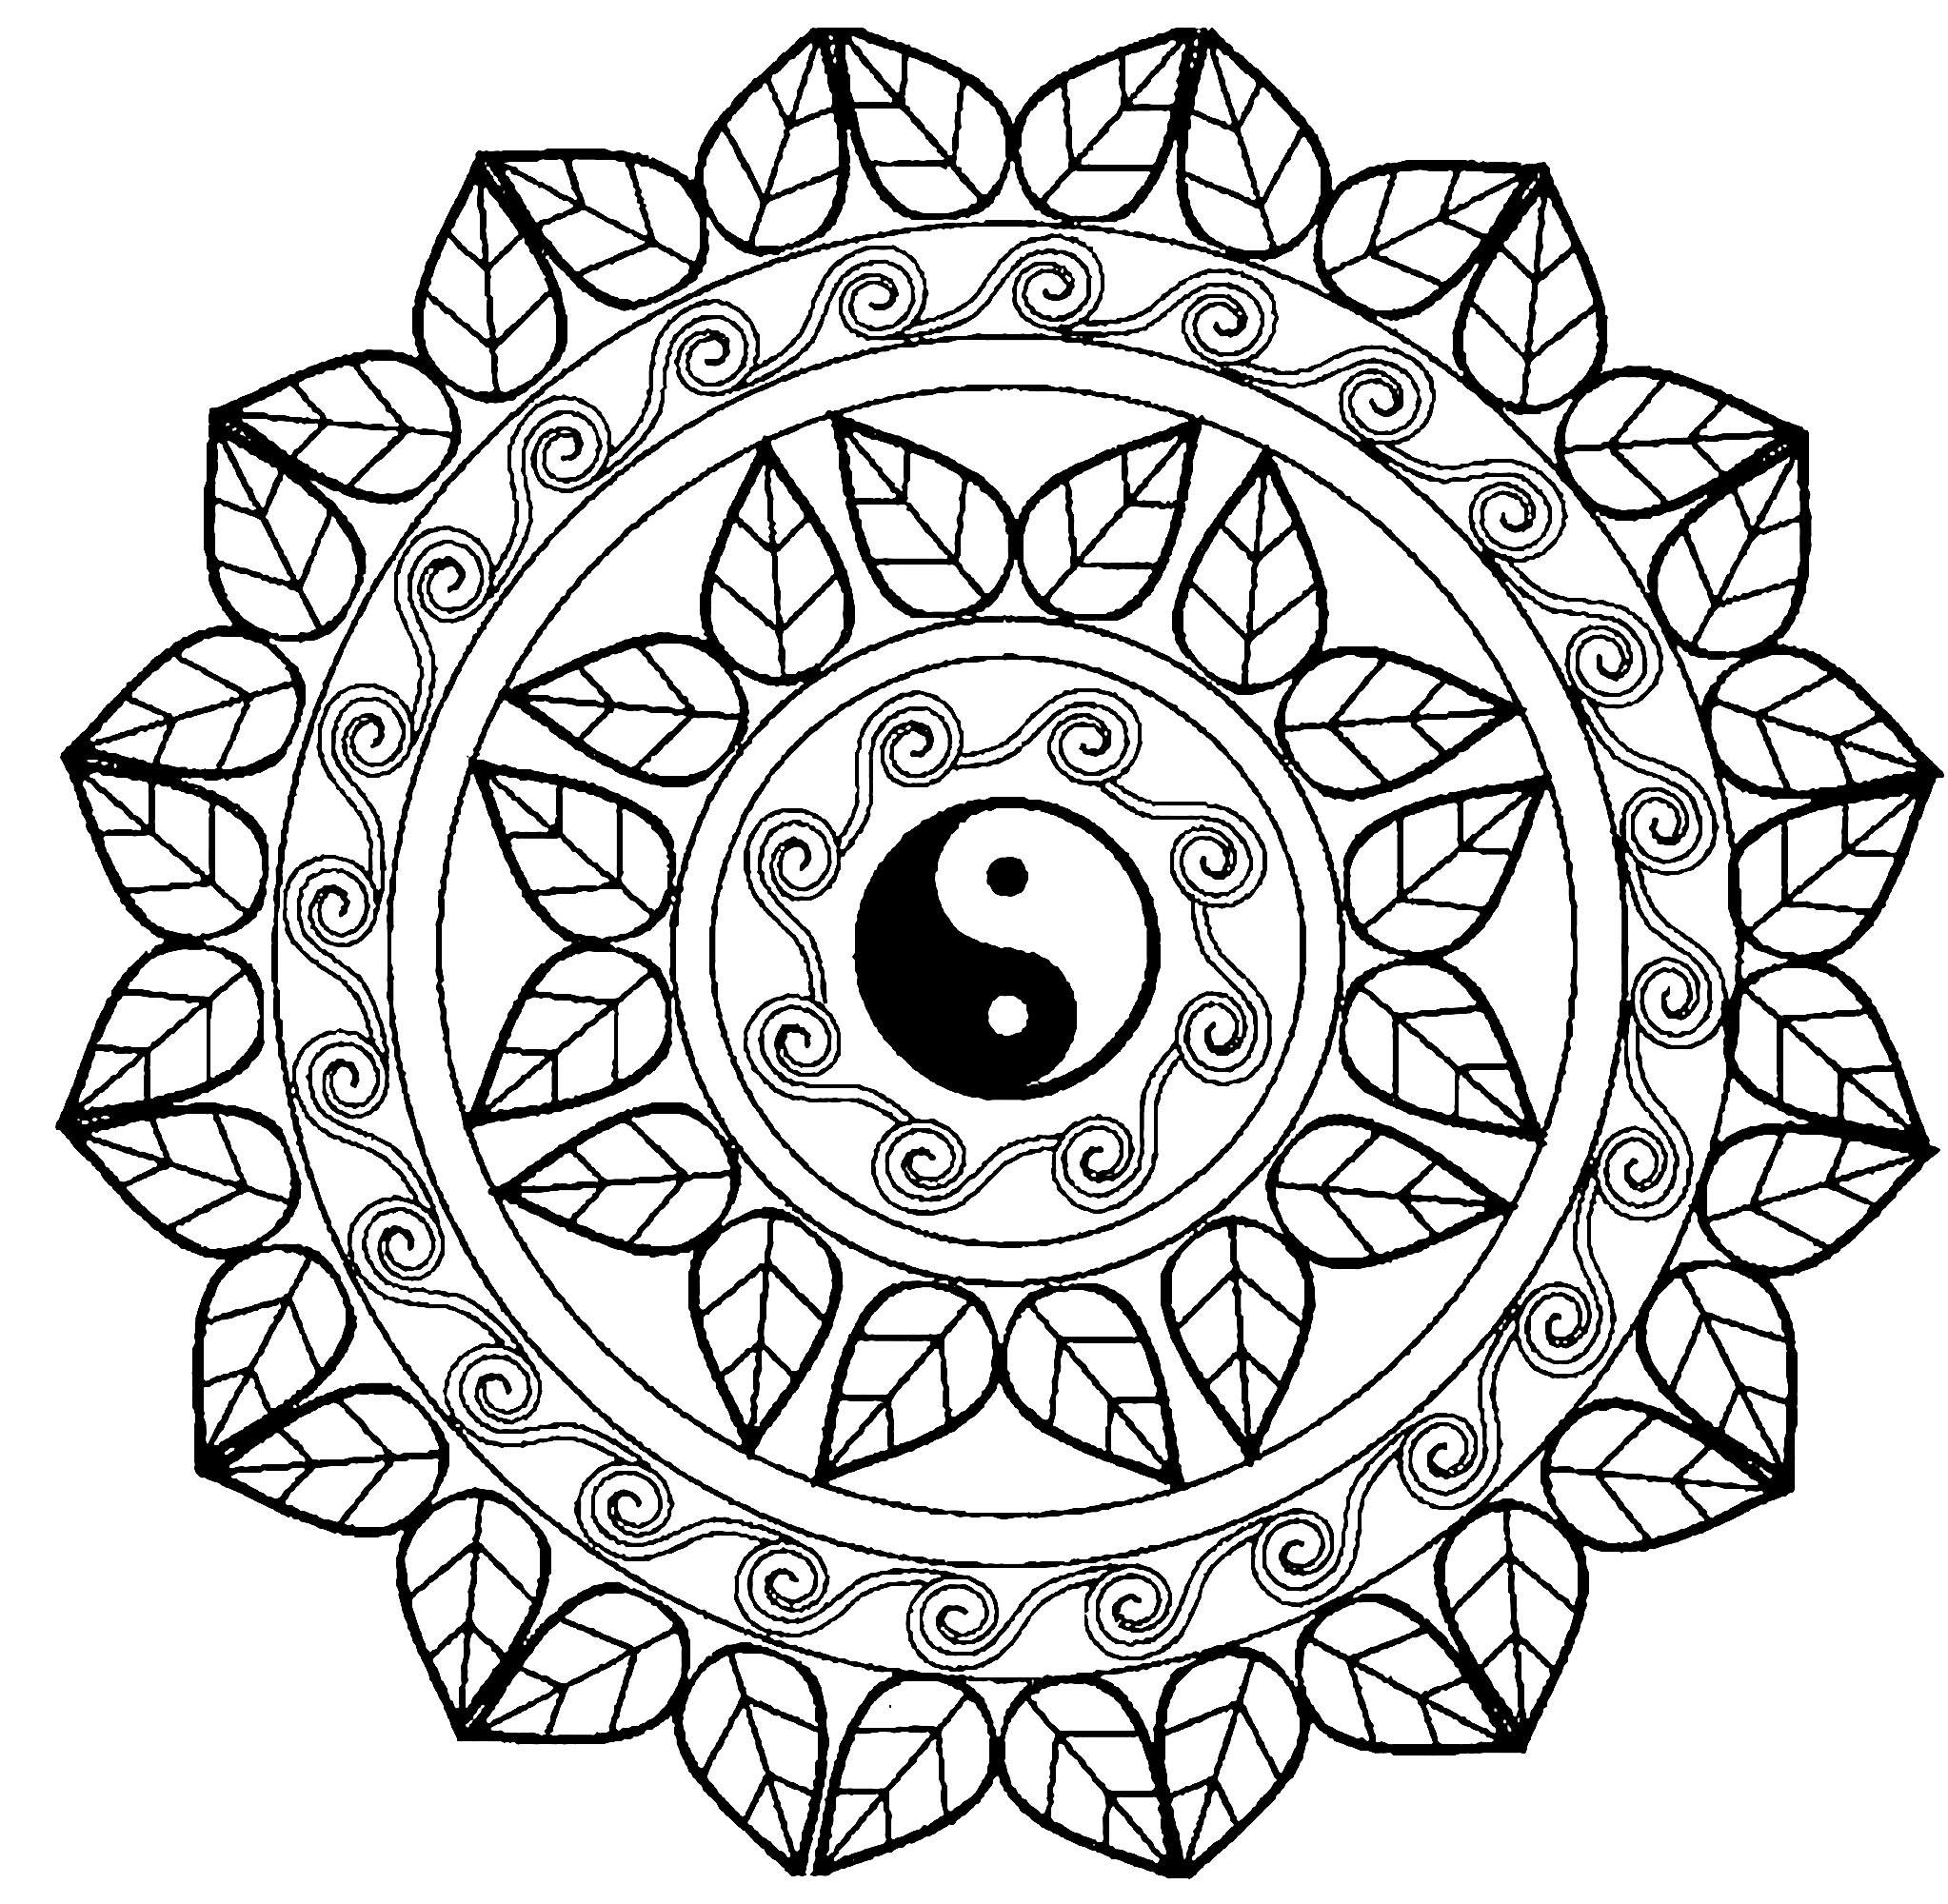 Wählen Sie die Technik, die Ihnen am besten gefällt, um dieses exklusive Mandala mit dem berühmten Yin-Yang-Symbol in der Mitte farbig zu gestalten! Lassen Sie Ihre Seele in dieses schöne Mandala einfließen.